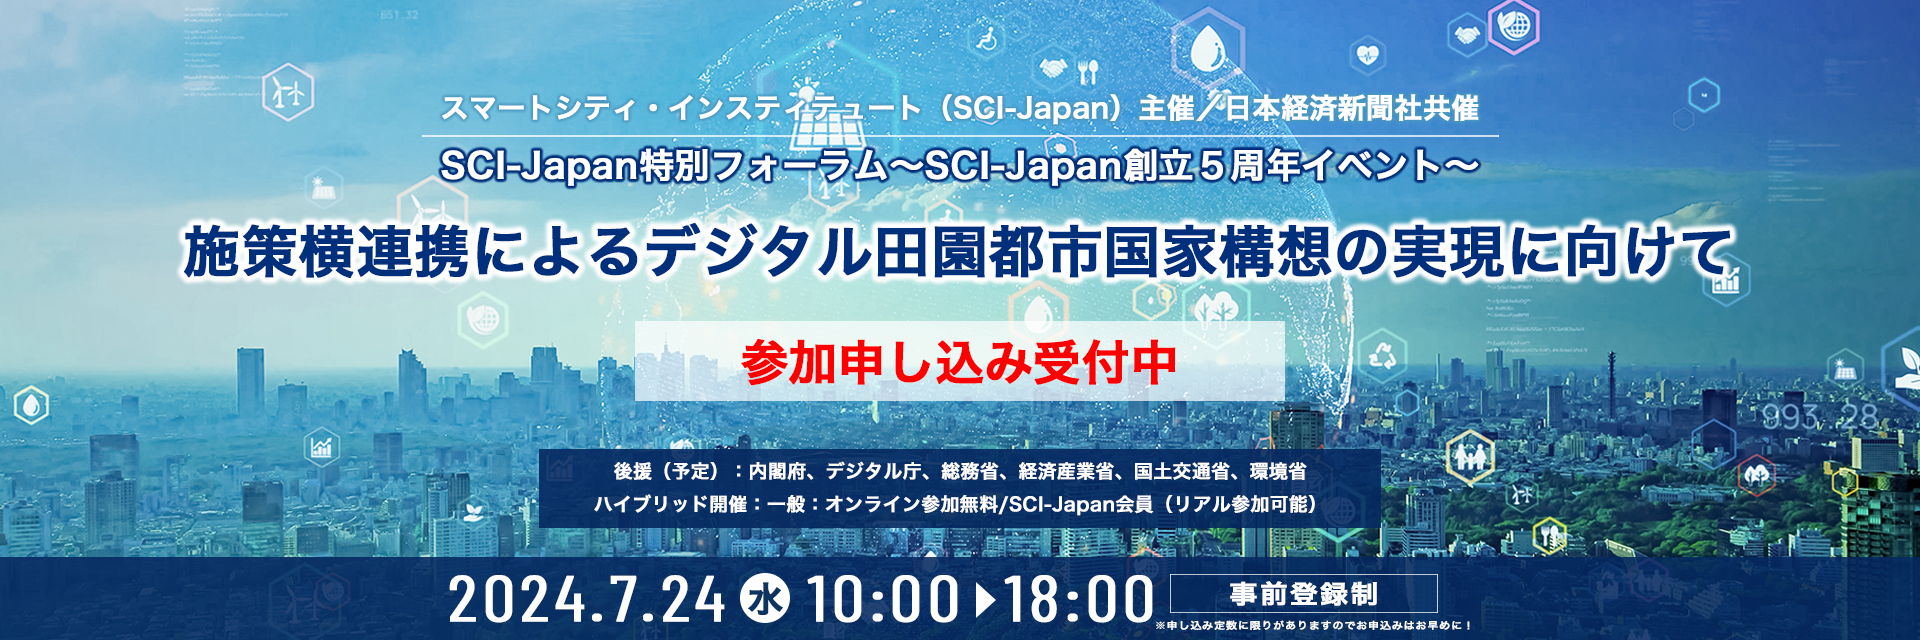 2024特別フォーラム〜SCI-Japan創立5周年イベント〜「施策横連携によるデジタル田園都市国家構想の実現に向けて」参加申し込み受付中